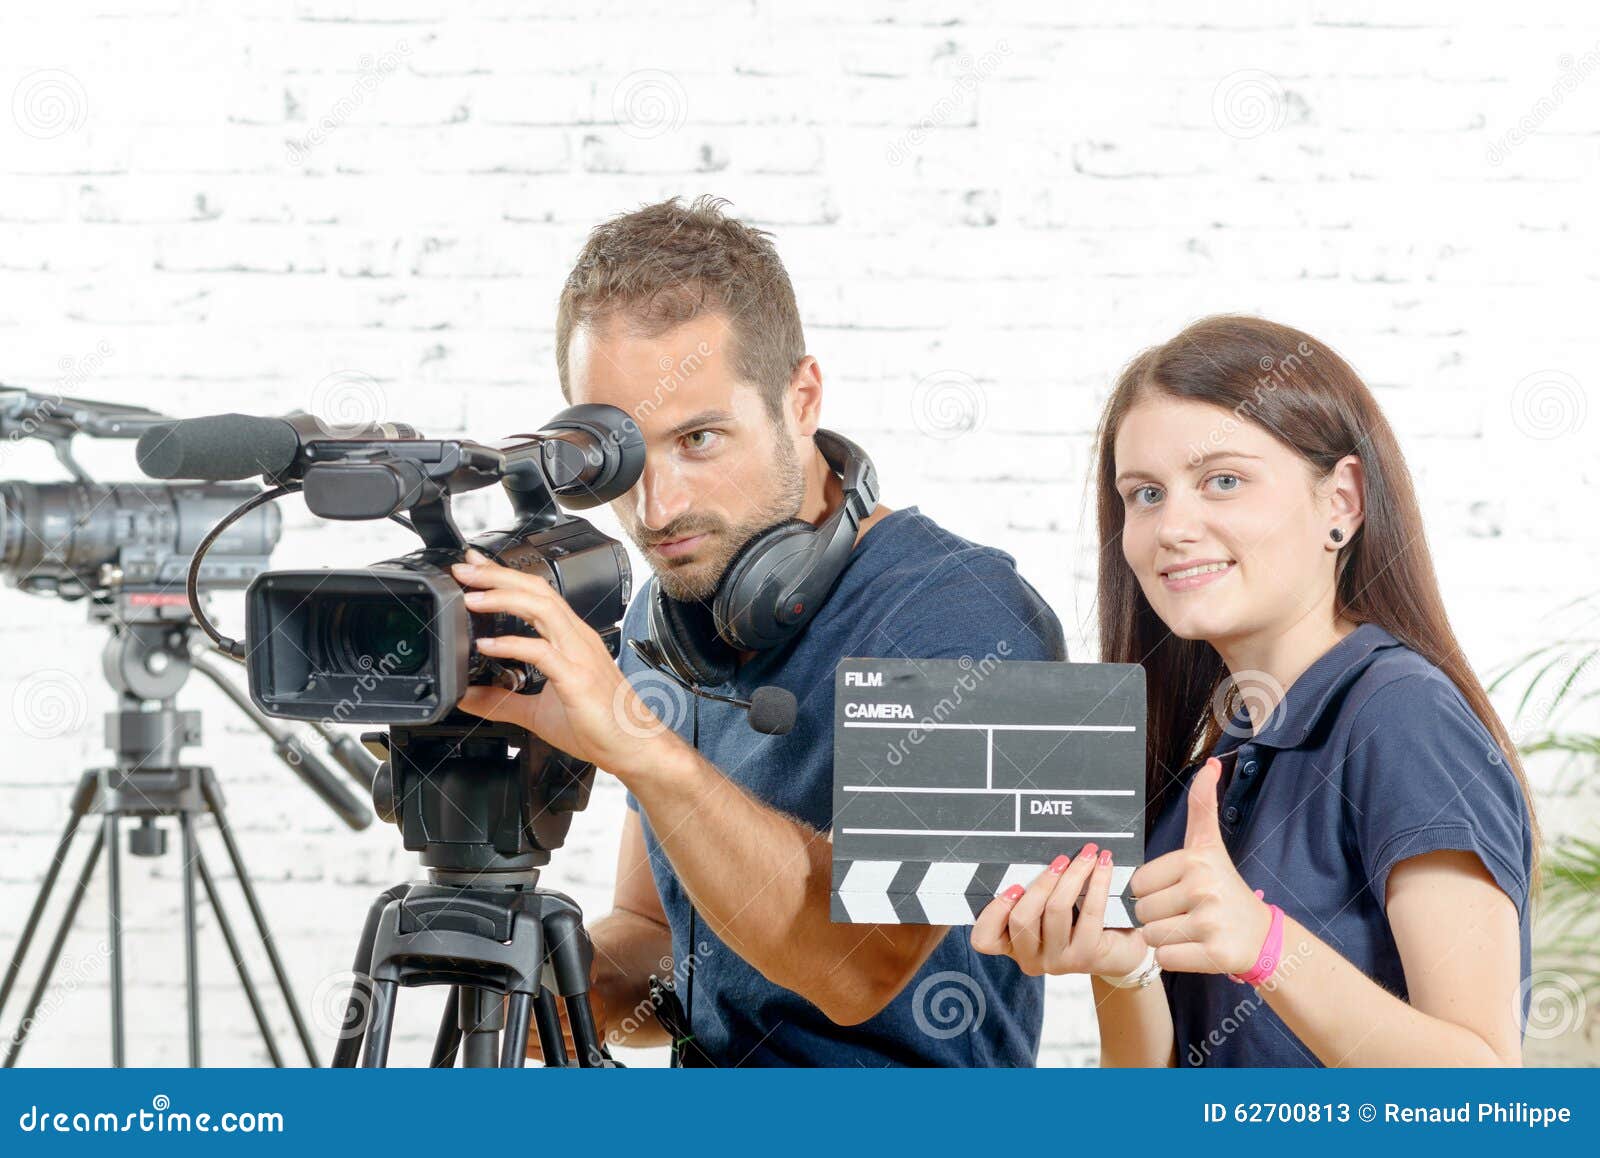 movie cameraman salary